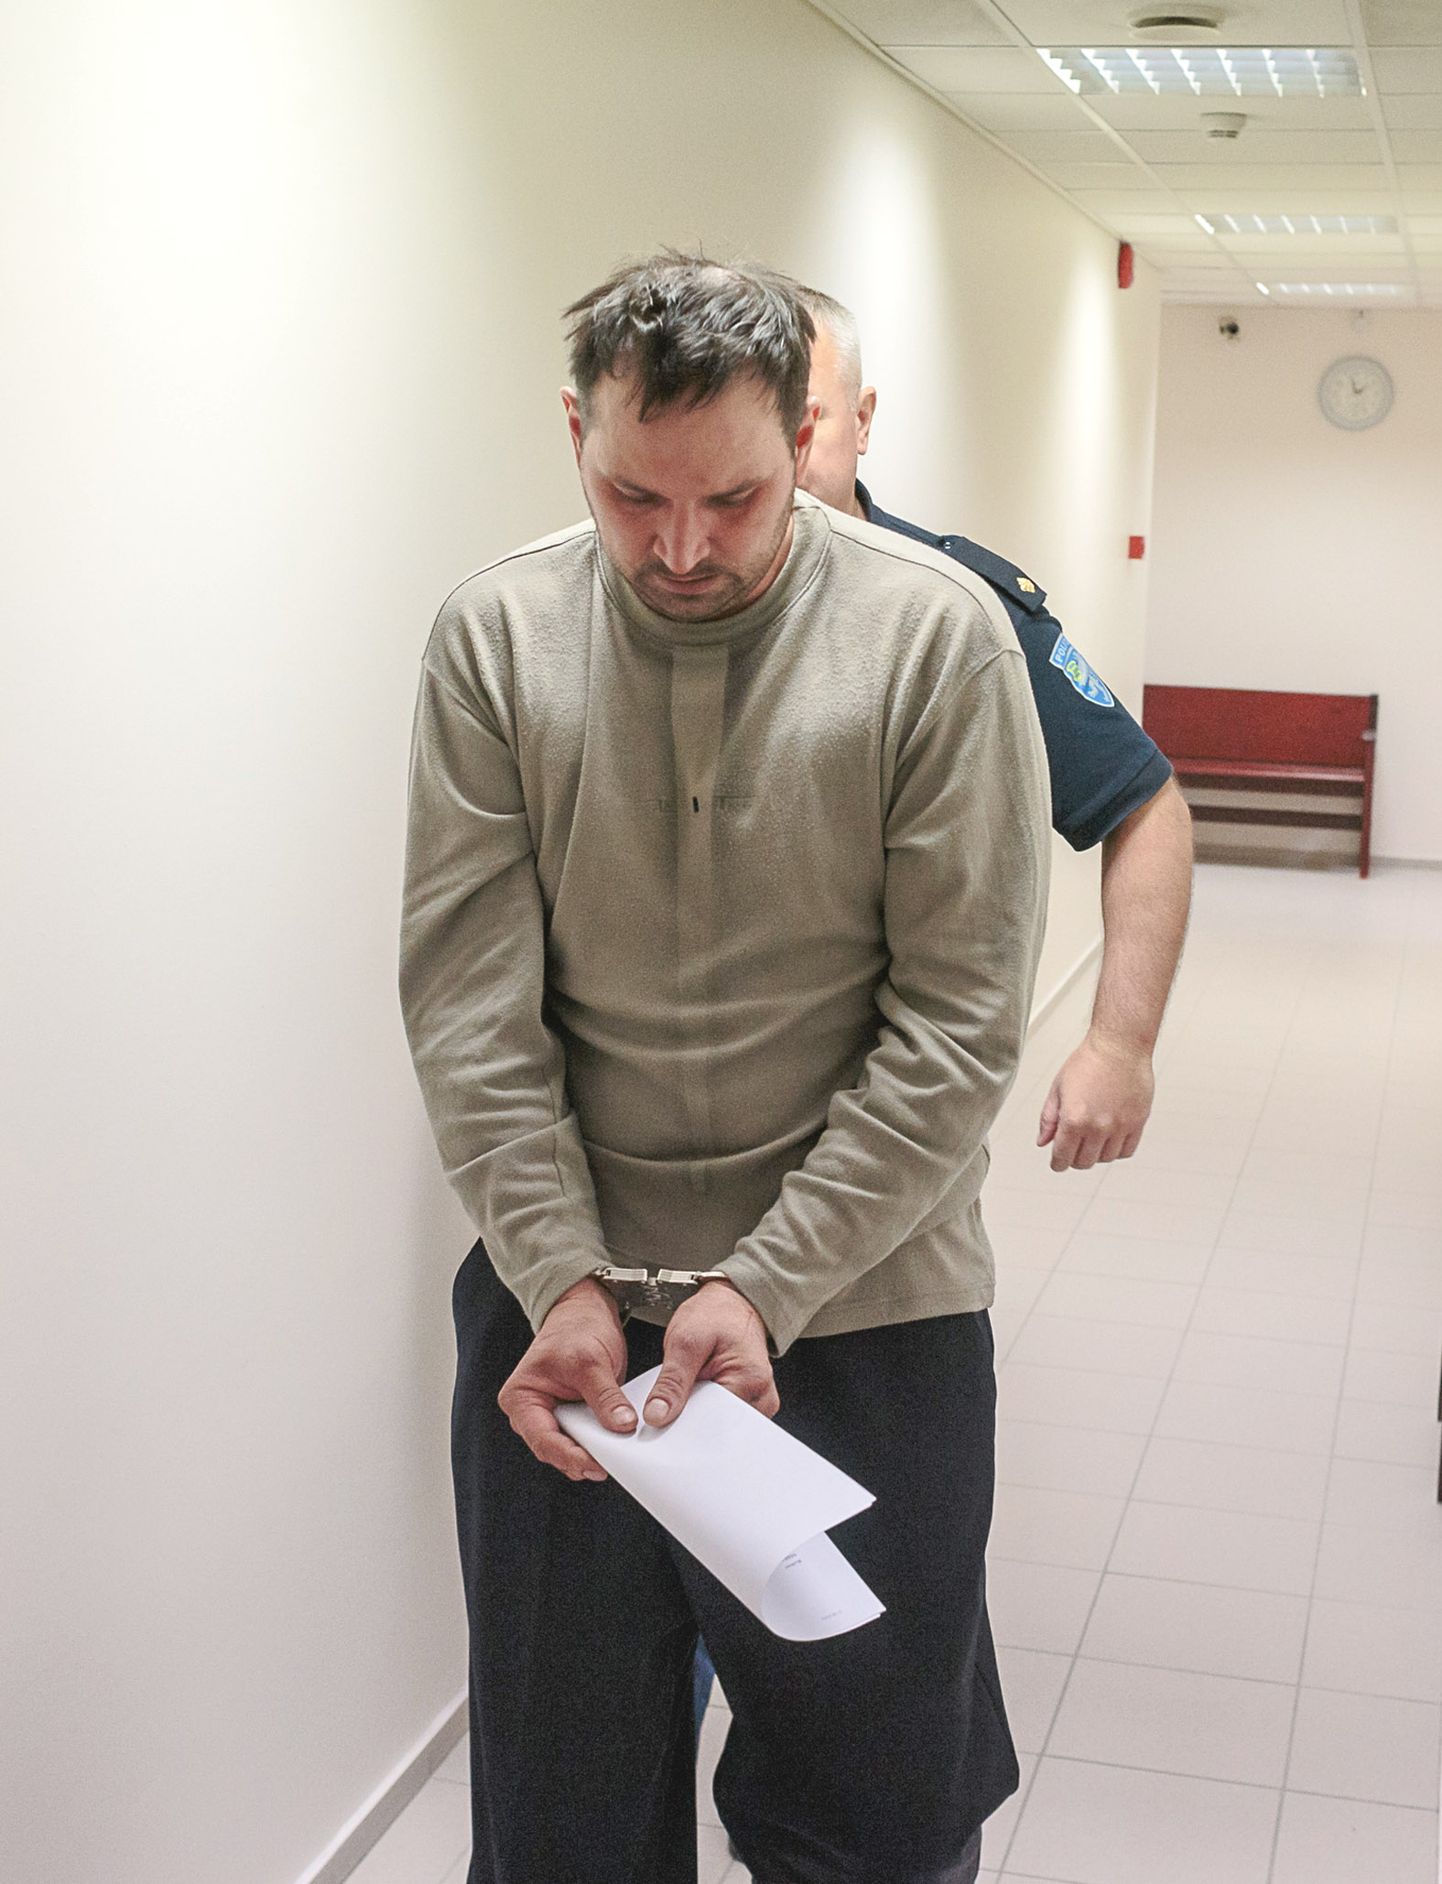 Nii nägi Sergei Golubev välja 2018. aasta aprillis, mil kohus väljastas loa tema vahi all pidamiseks. Mitte kordagi selle aja sees pole kahtluse alla seatud seda, et see räsitud ilme ja kriibitud näoga meesterahvas kuriteo tõepoolest toime pani, ent kaalumisel on kuriteo ümberkvalifitseerimine.